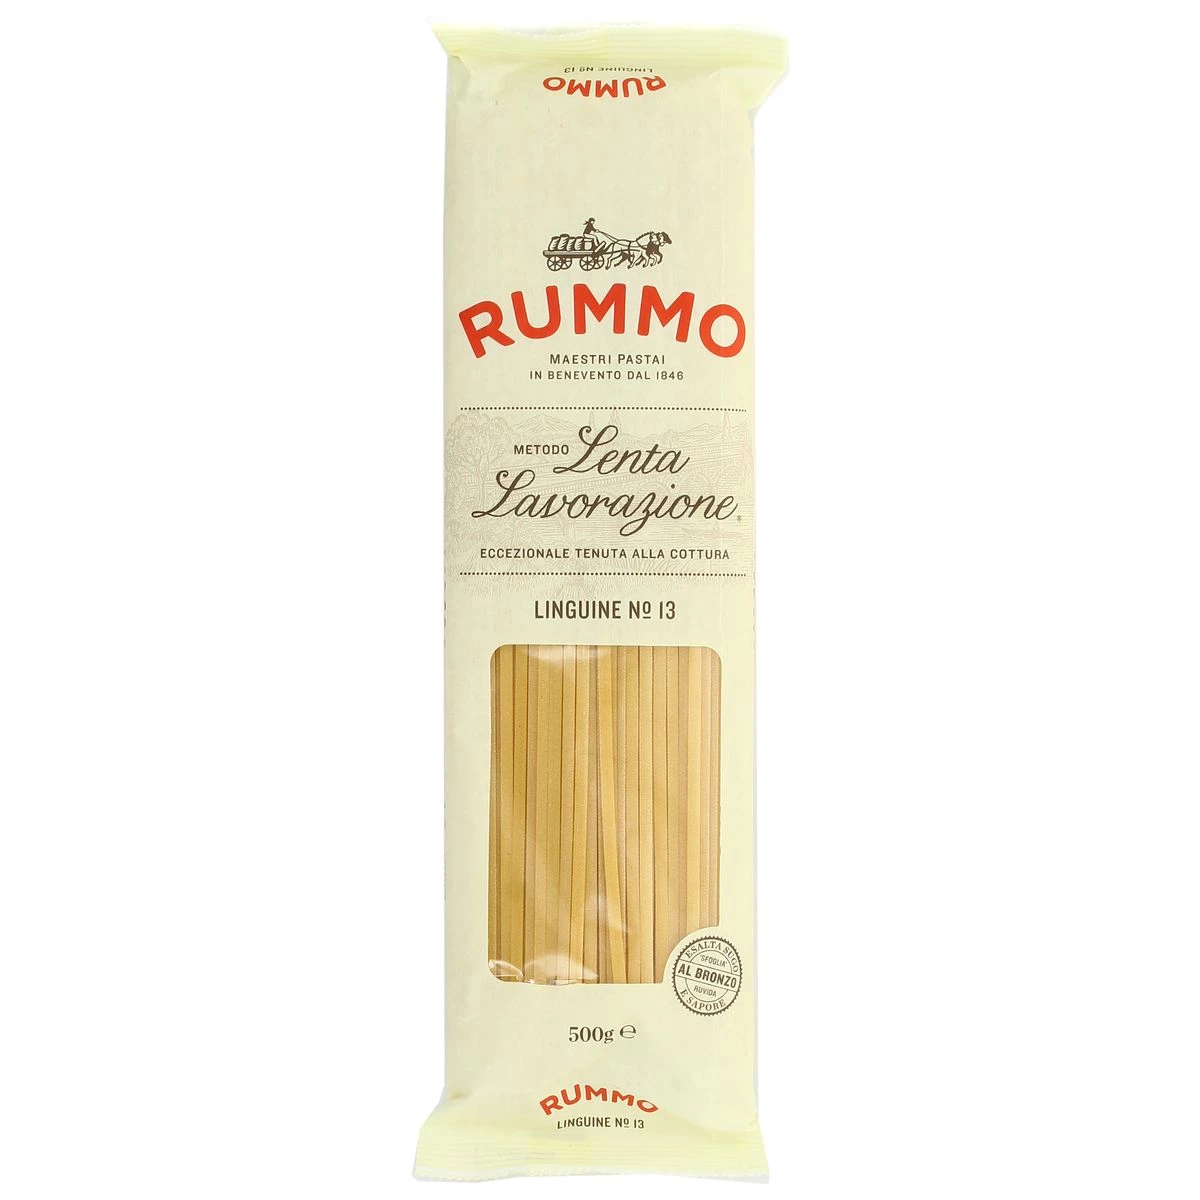 Pasta linguini n°13, 500g - RUMMO